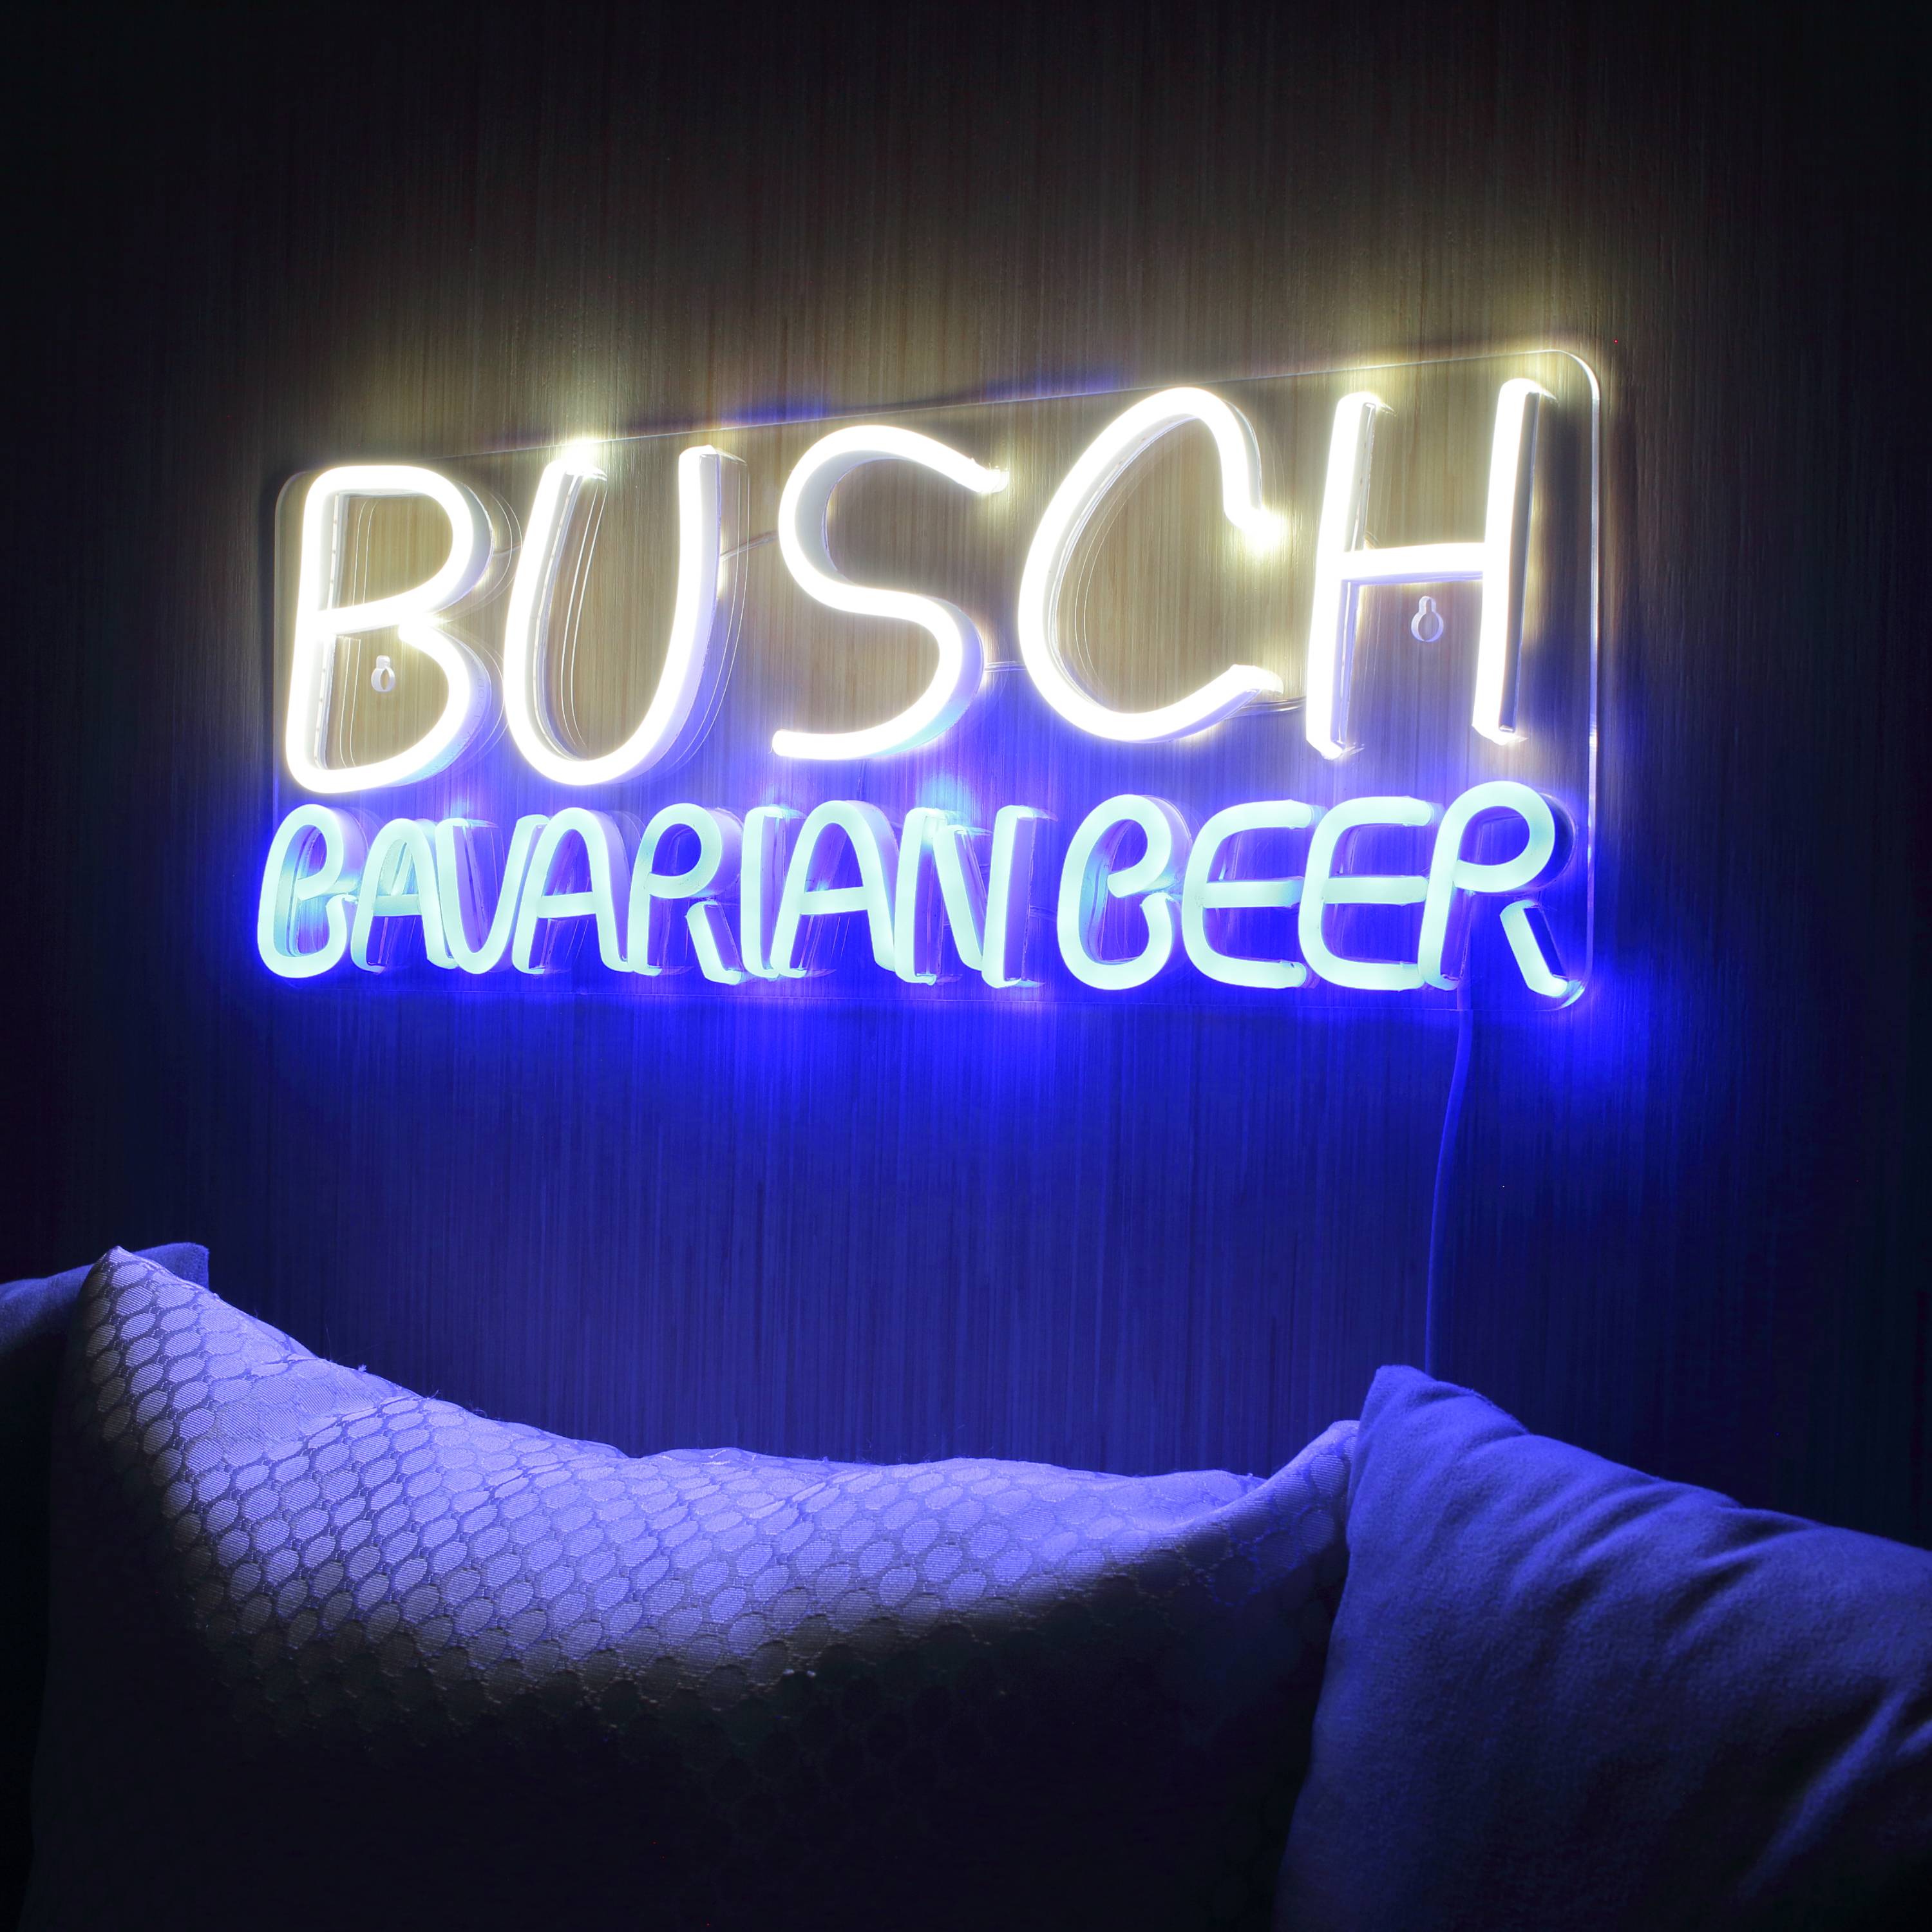 Busch Bavarian Beer Large Flex Neon LED Sign